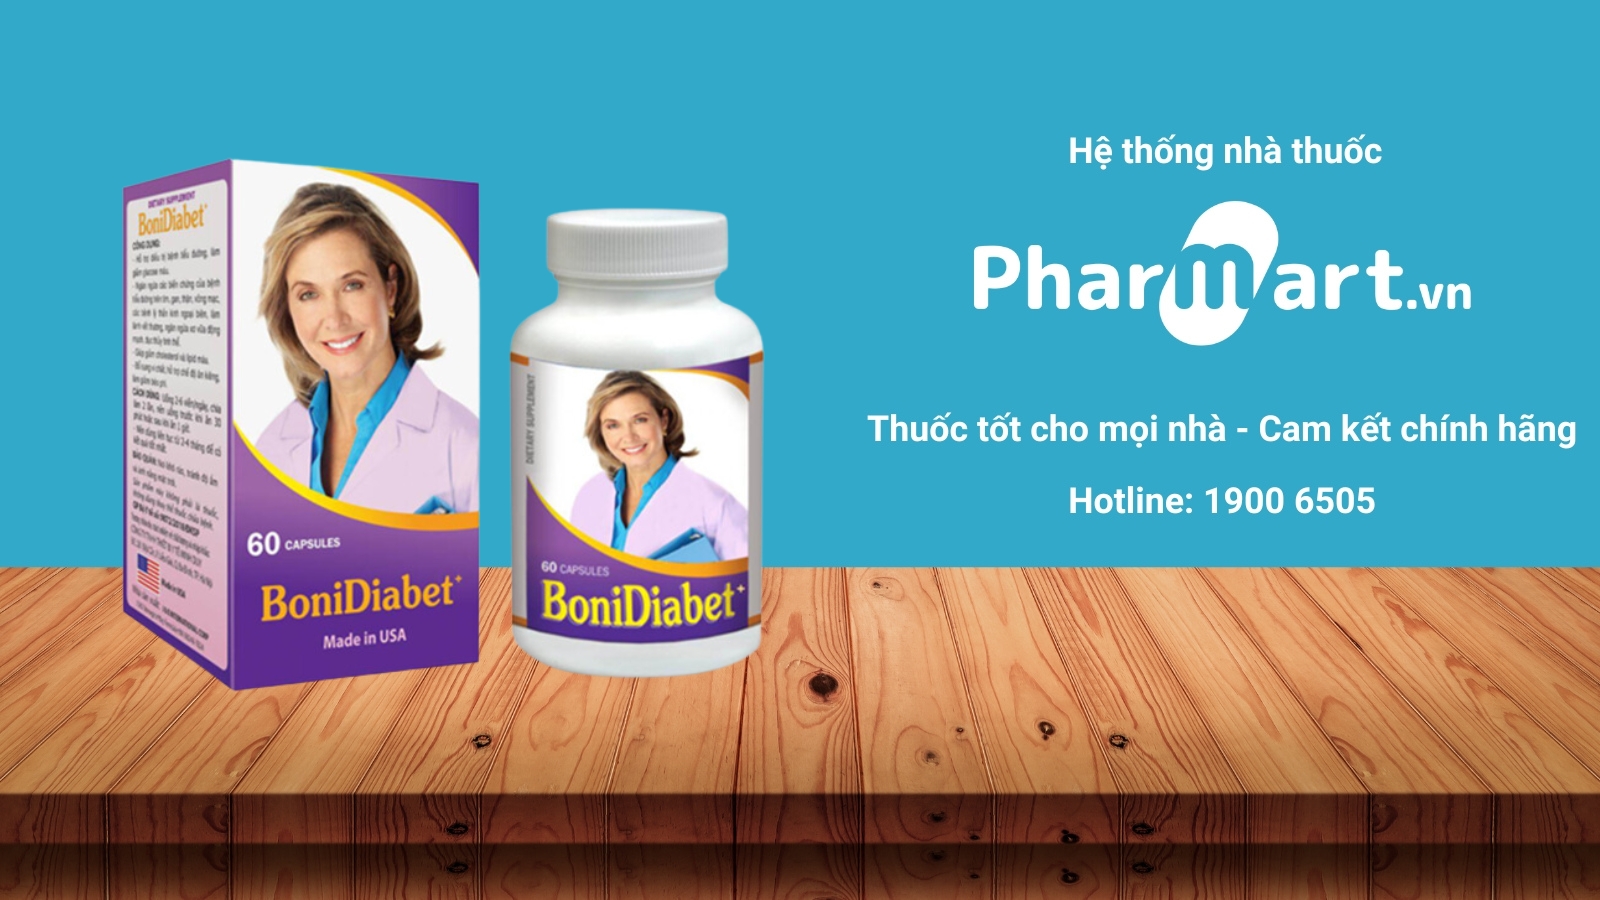 Mua ngay BotaDiabet chính hãng tại Pharmart.vn